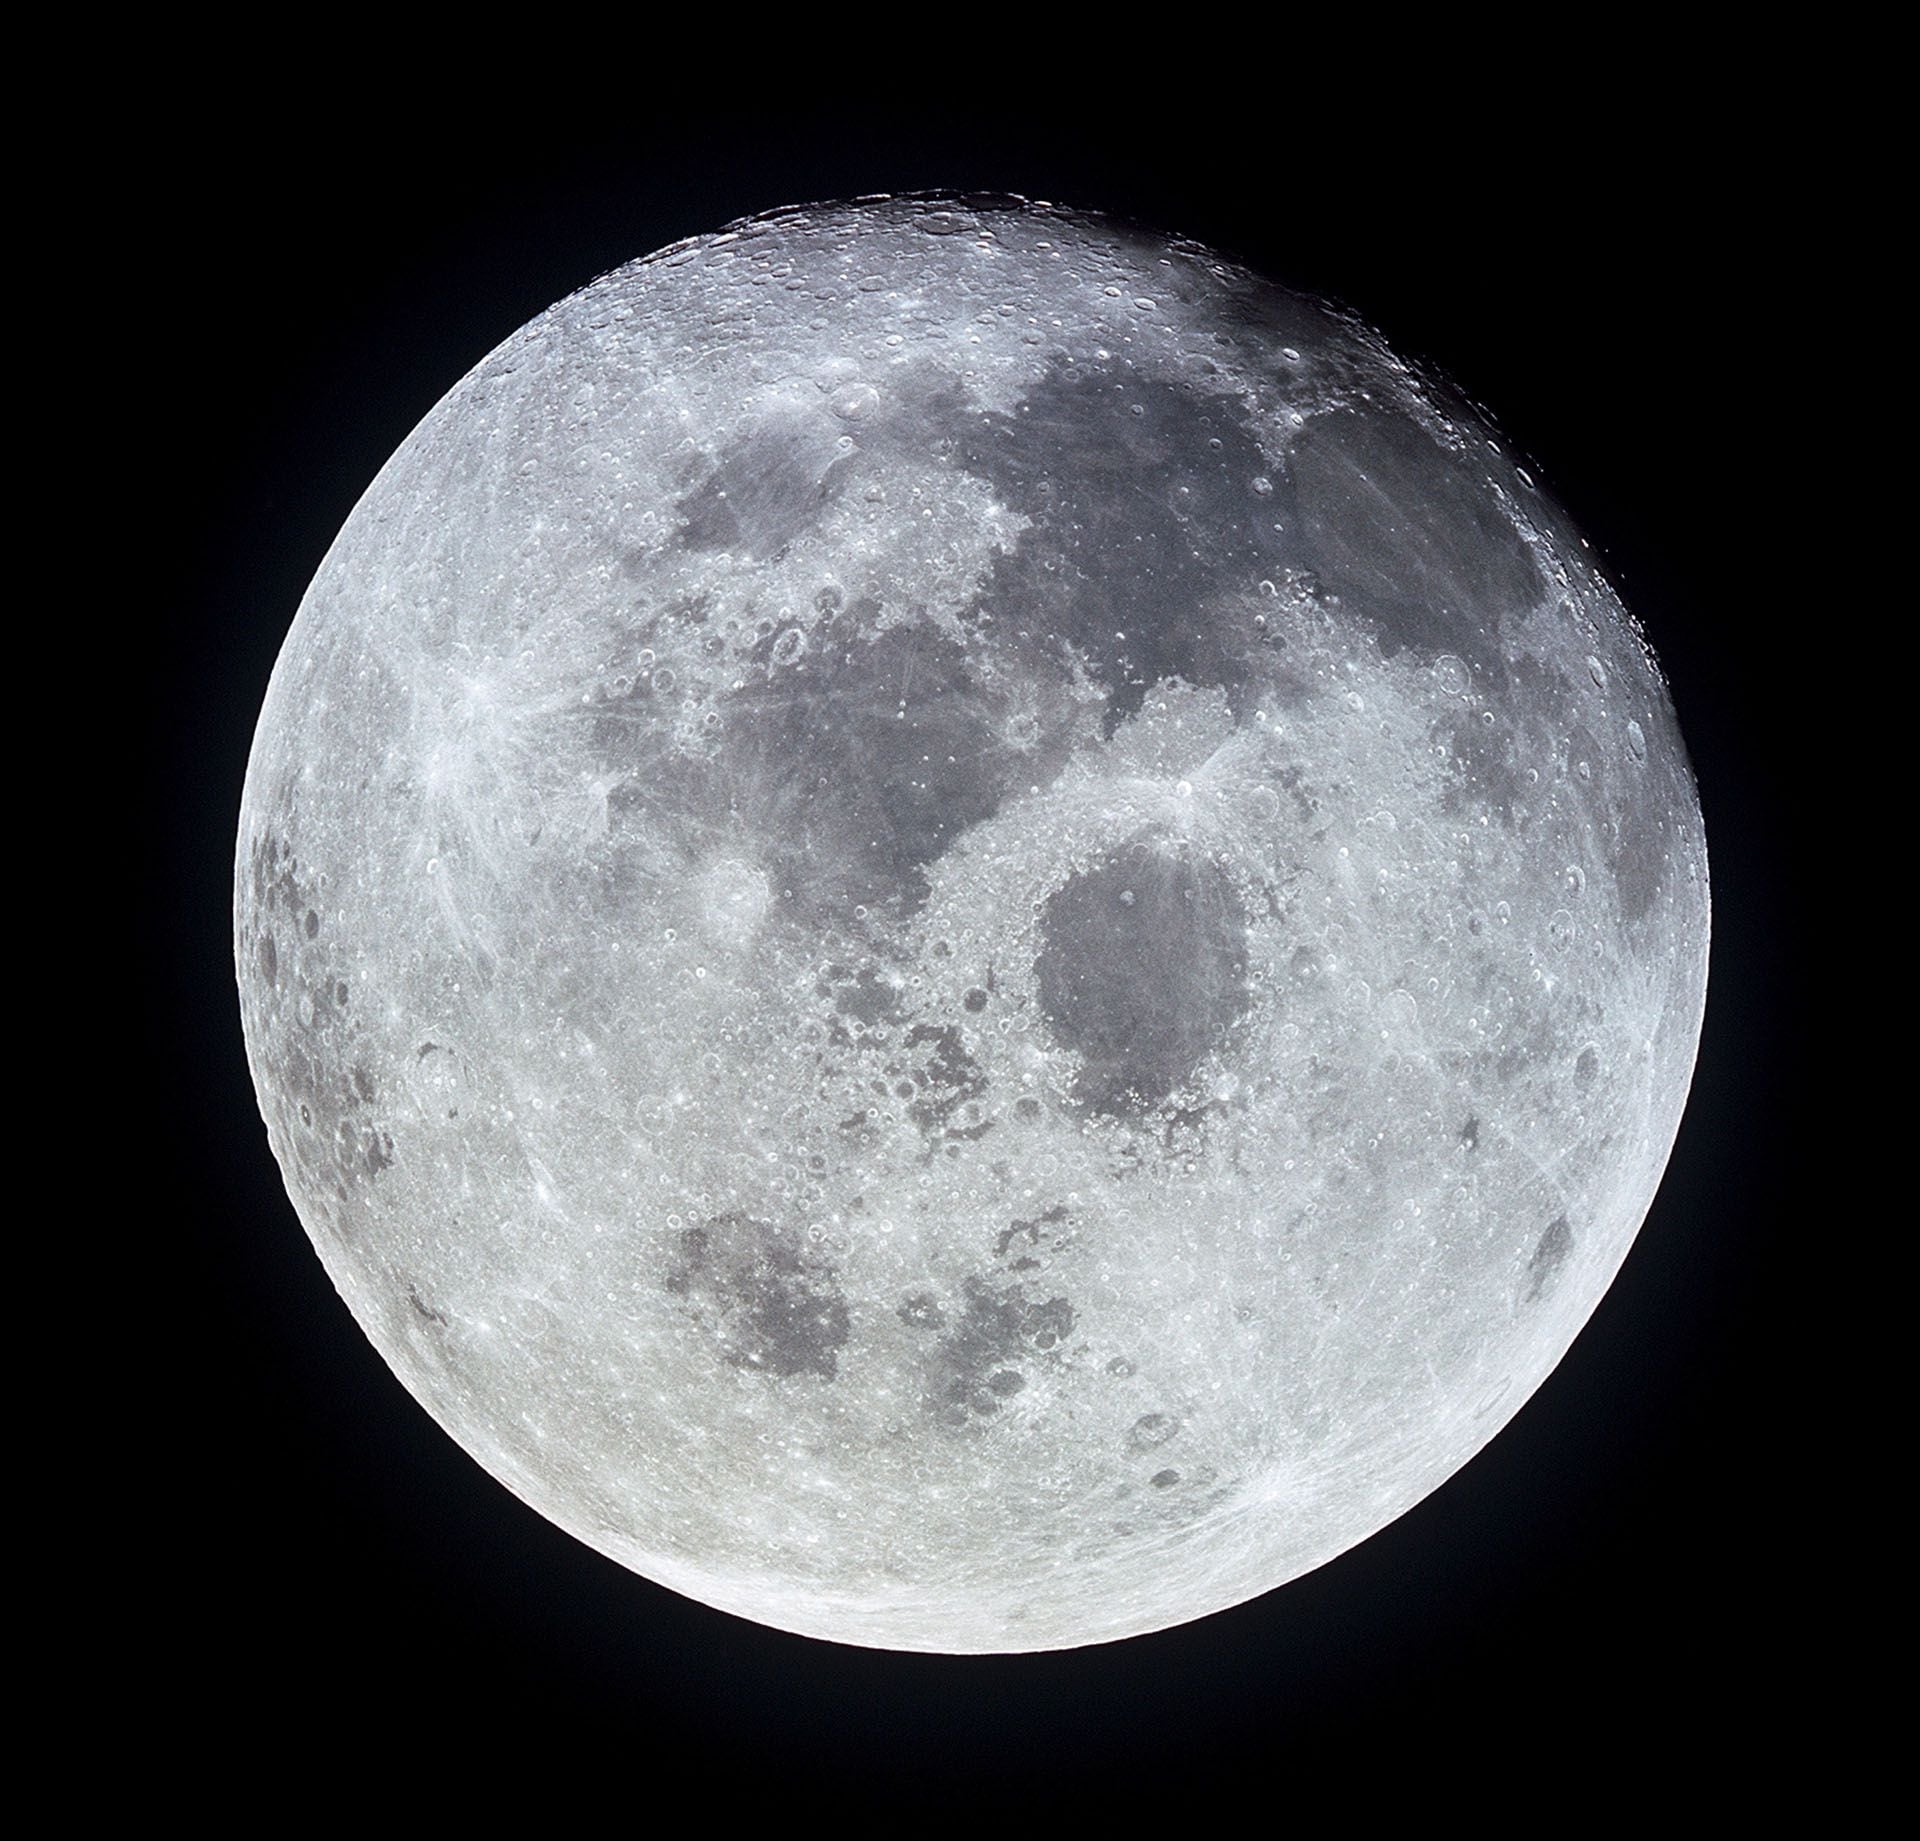 La luna llena fotografiada desde la nave espacial Apolo 11 durante su viaje transterrestre de regreso a casa (NASA/Folleto a través de REUTERS)